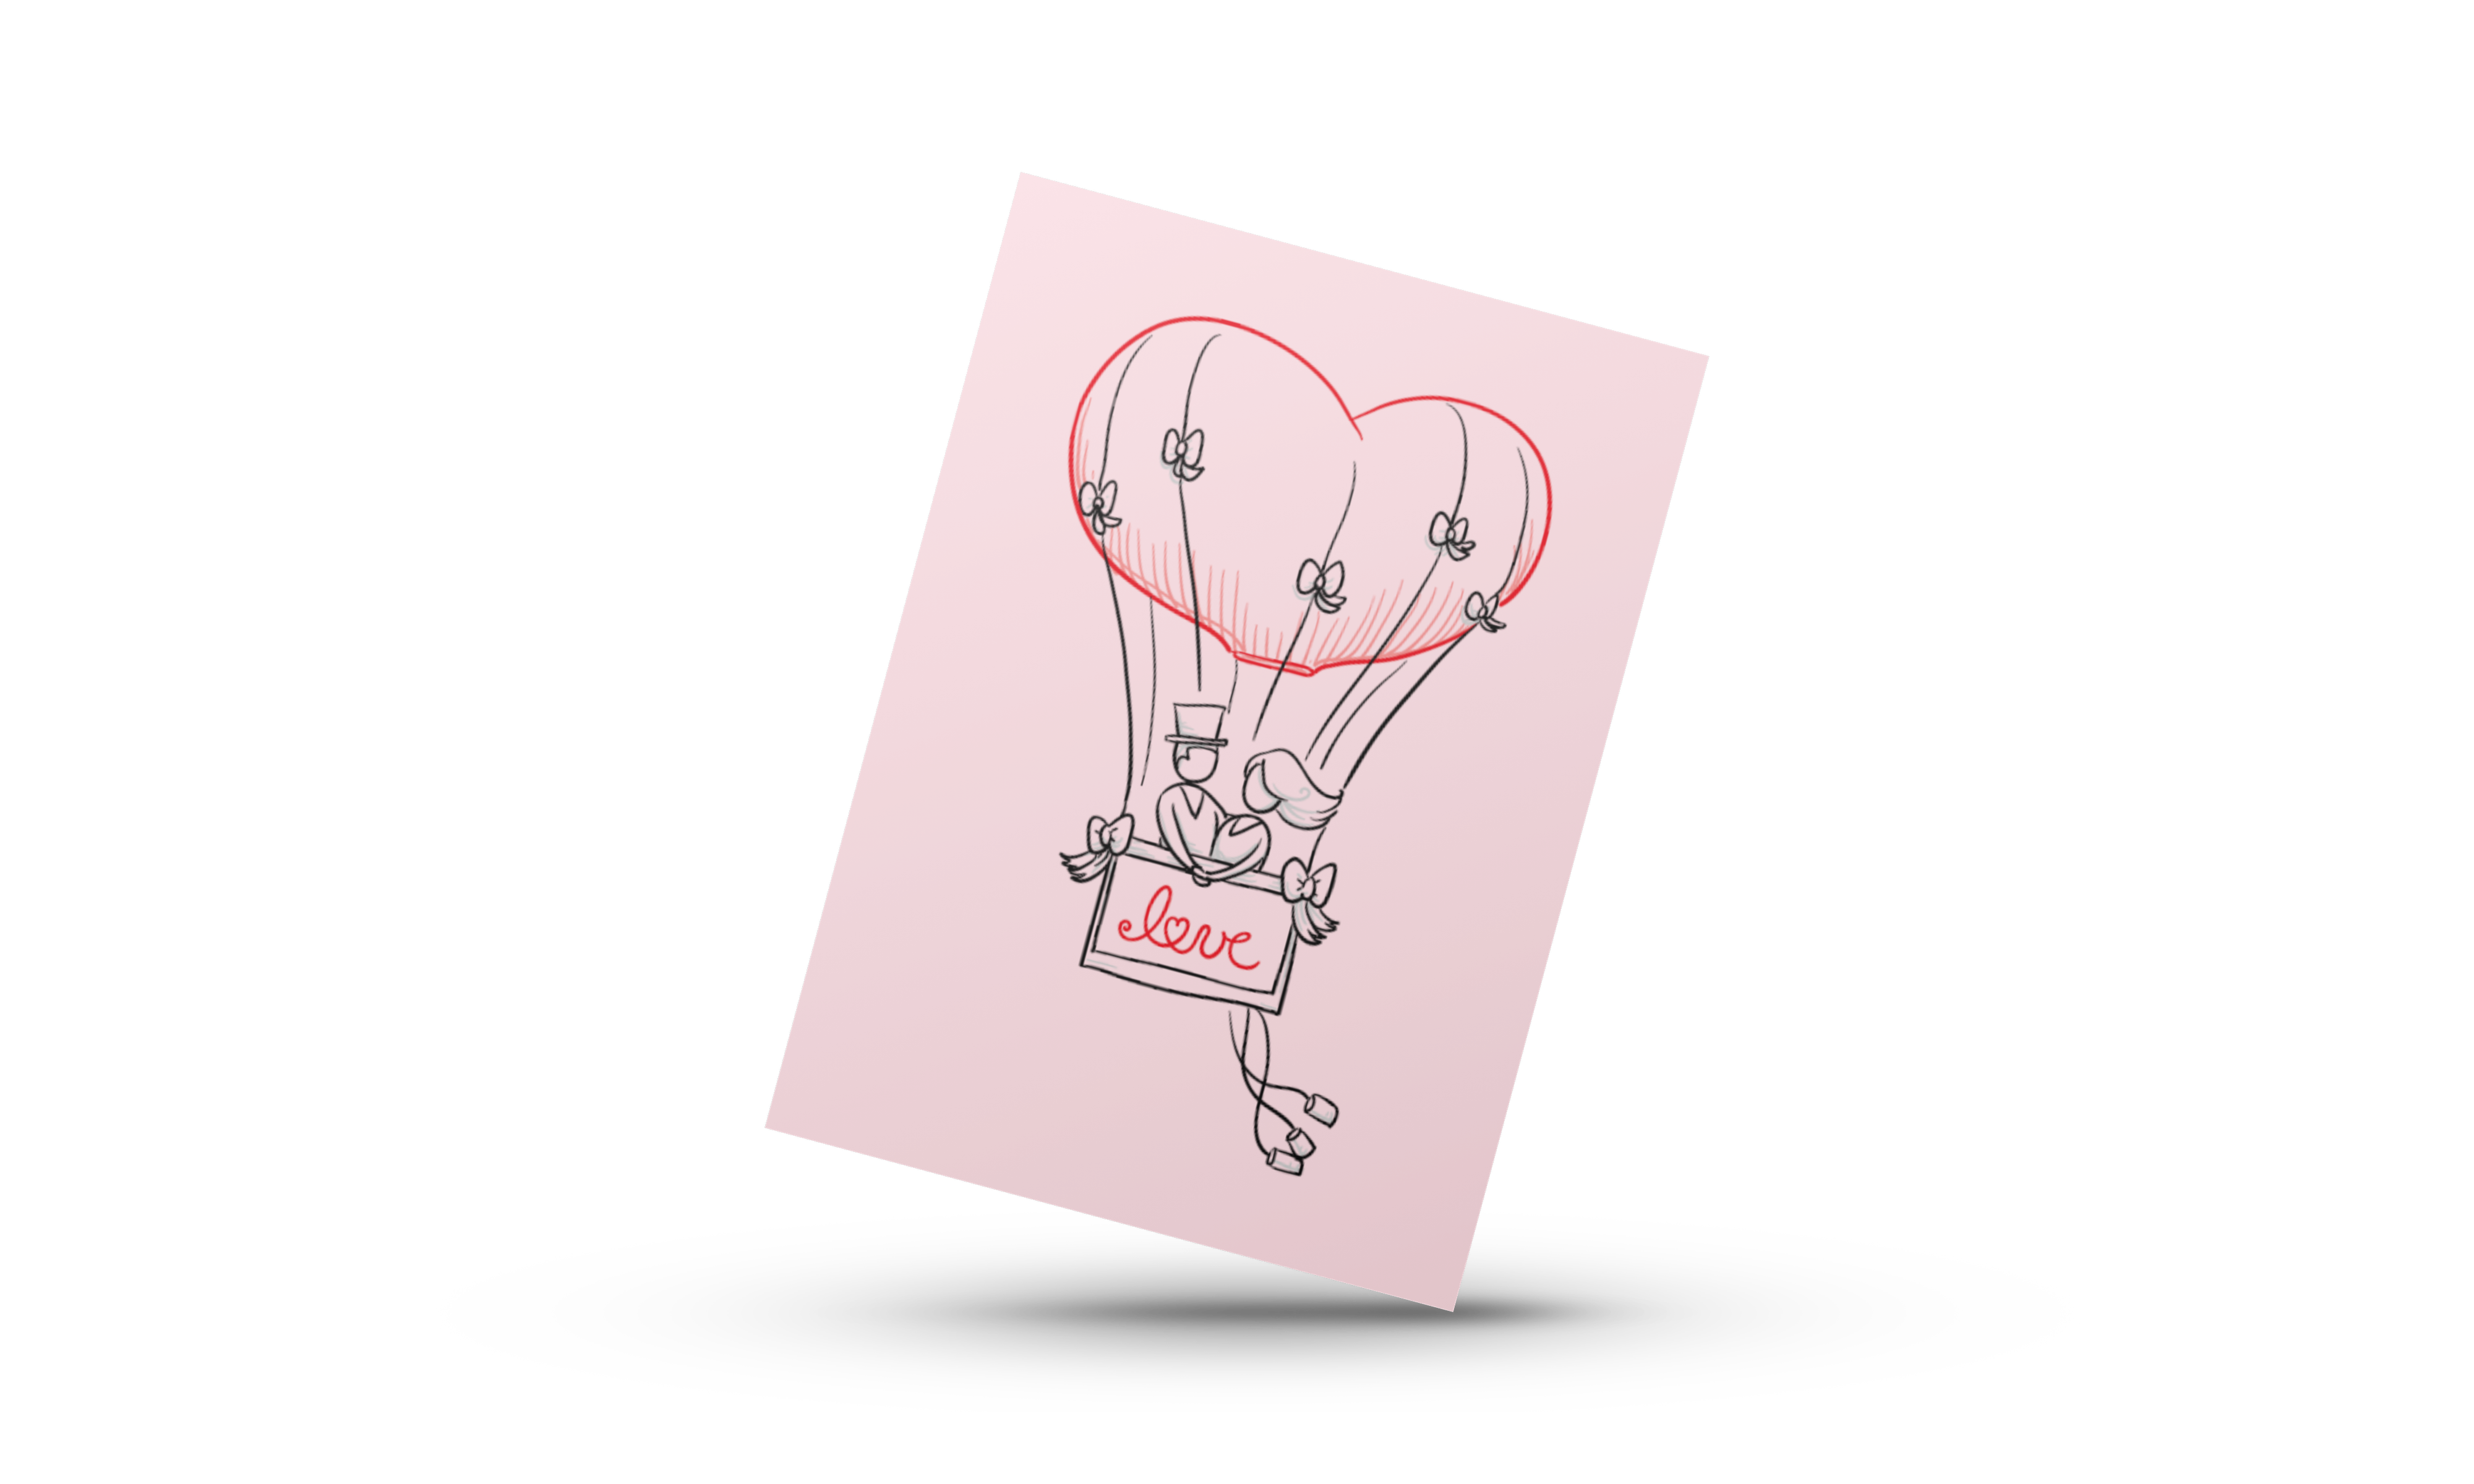 Love luftballon - minikort